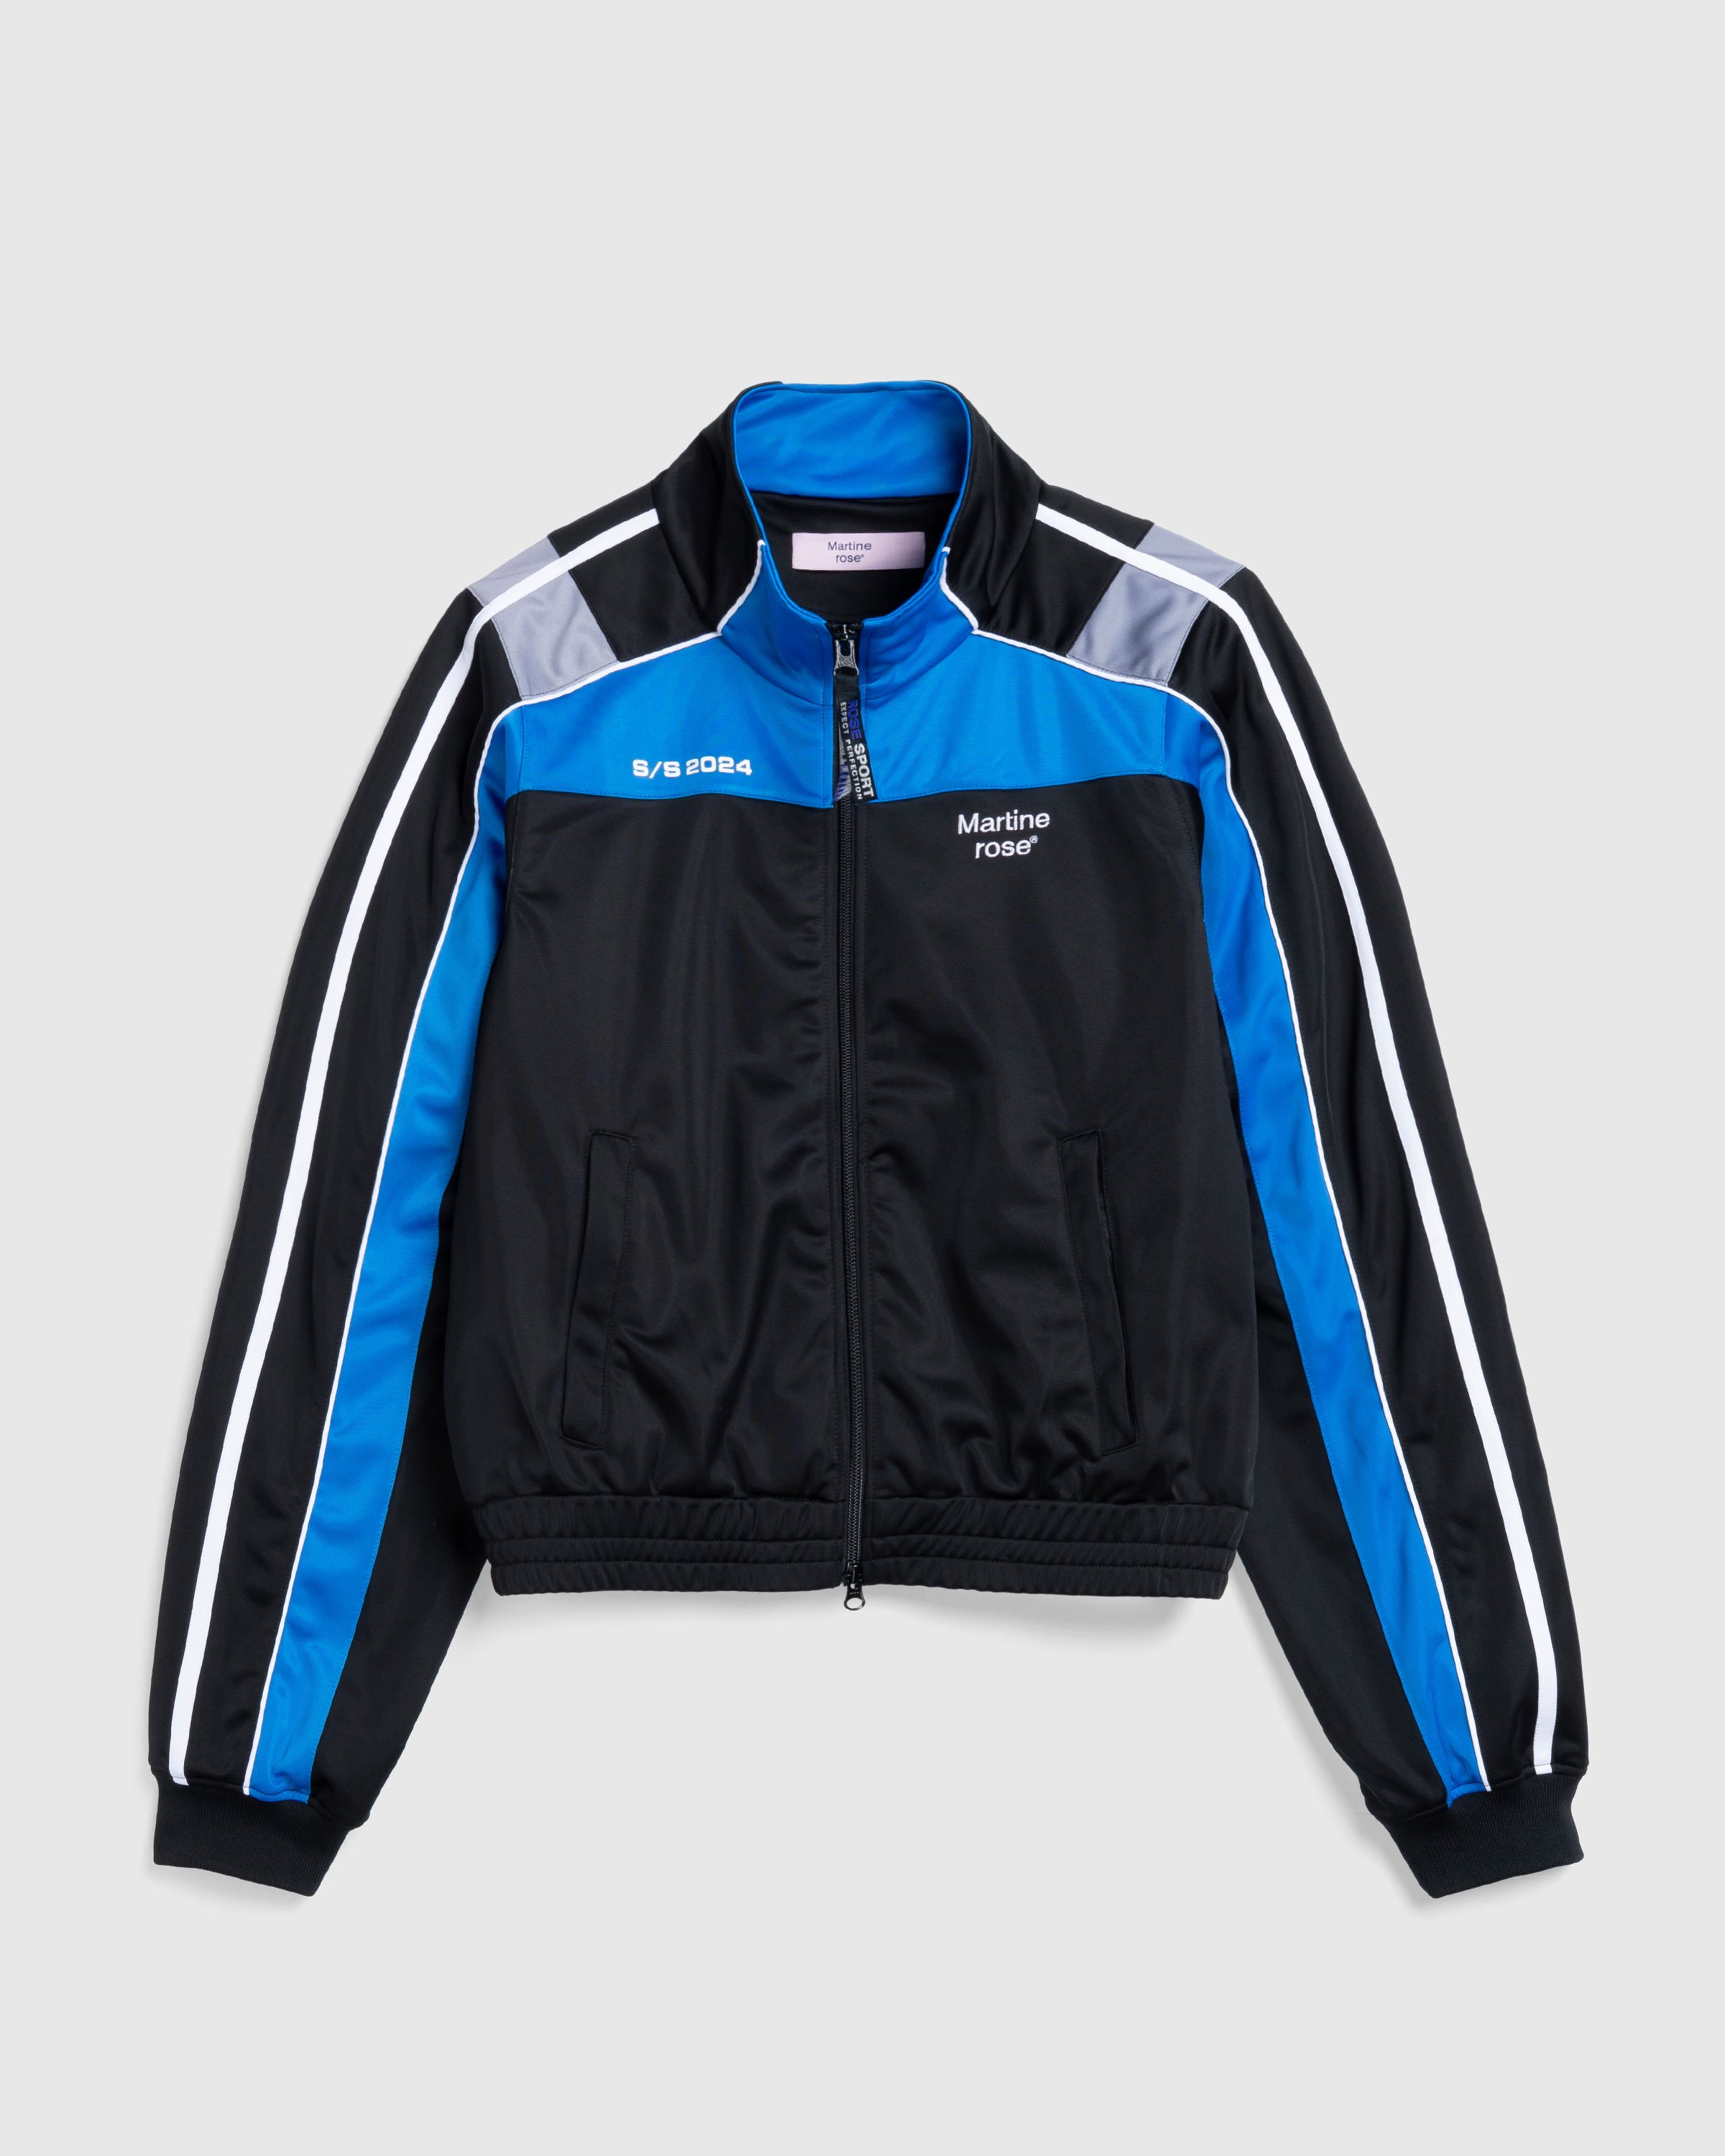 Martine Rose - Shrunken Track Jacket Black / Blue / Grey - Clothing - Black - Image 1